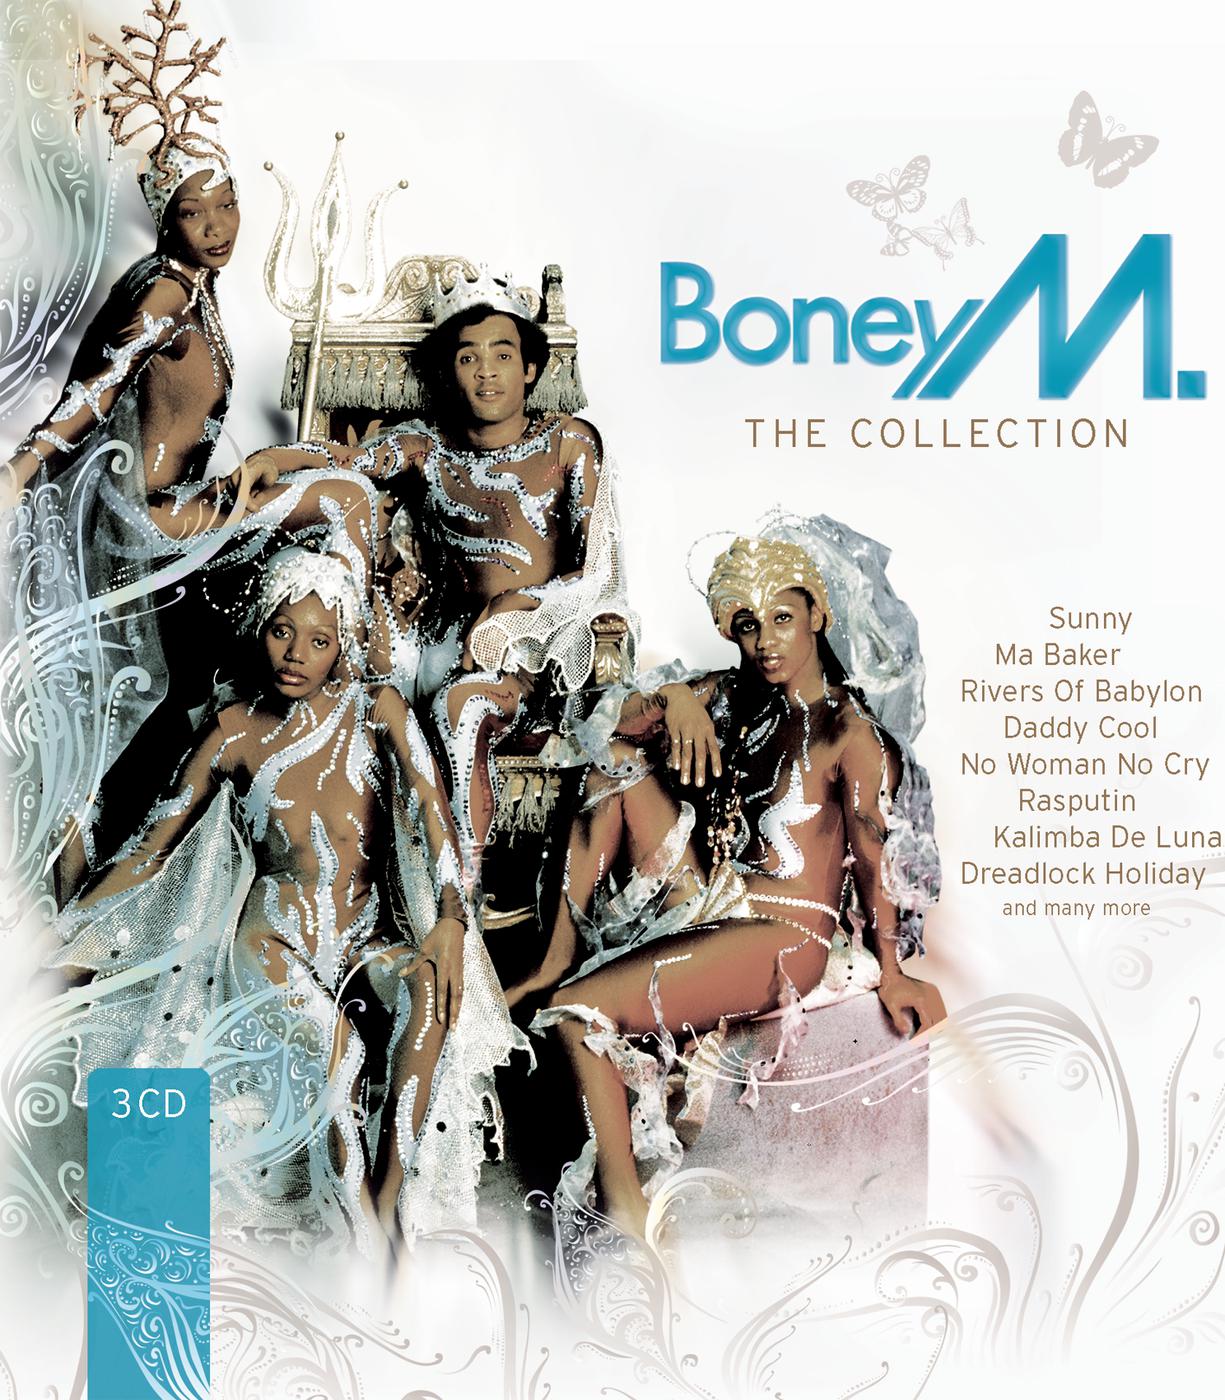 Песня санни бони. Boney m mp3 collection CD обложка. Группа Boney m. в 80. Boney m Sunny обложка. Boney m - 2008 - the collection album.